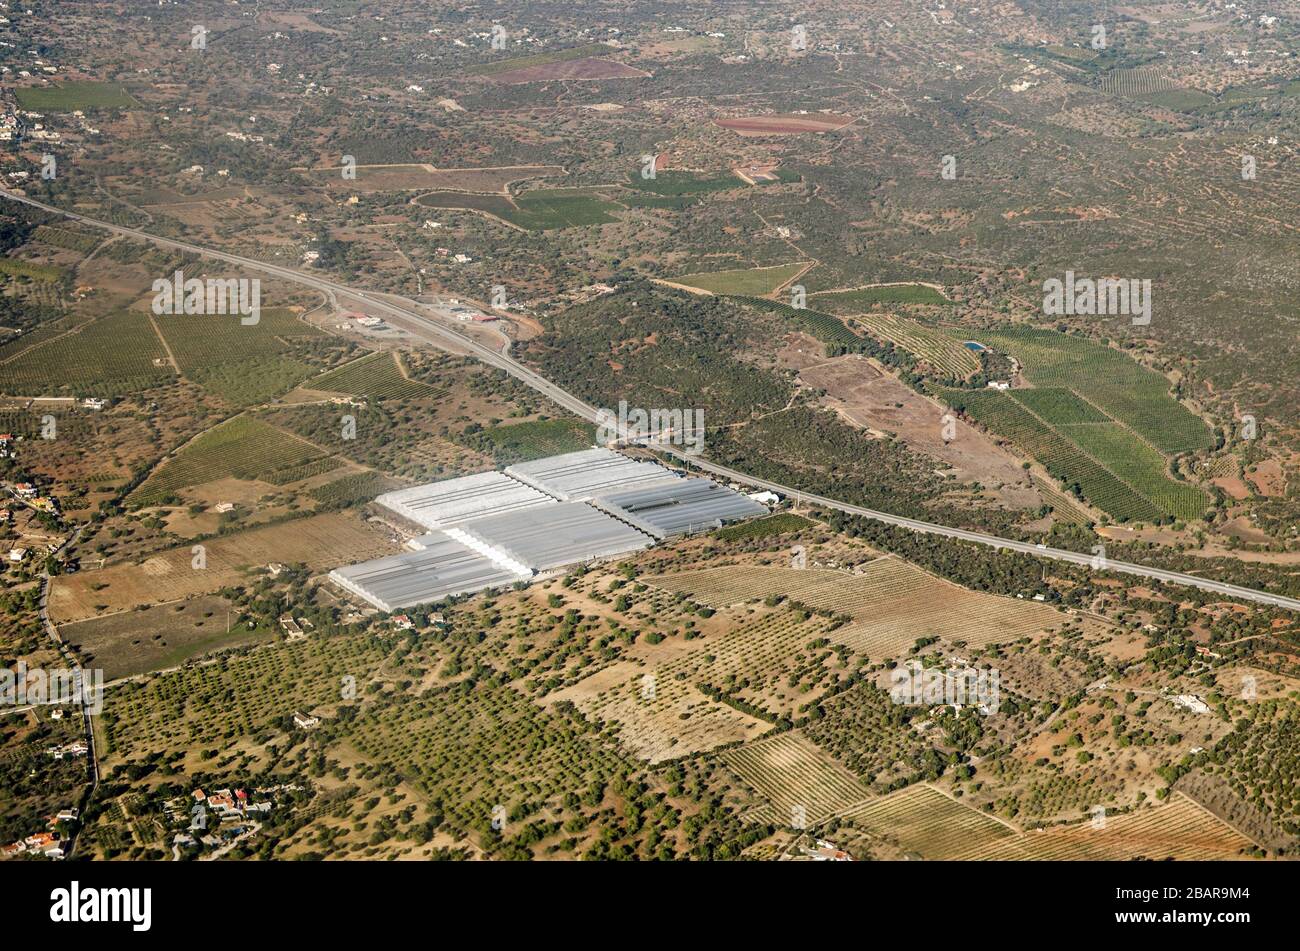 Vista aérea de invernaderos operados por la empresa Hubel en Fazenda Nova, en la región de Faro, Portugal la carretera A22 atraviesa el paisaje. Foto de stock